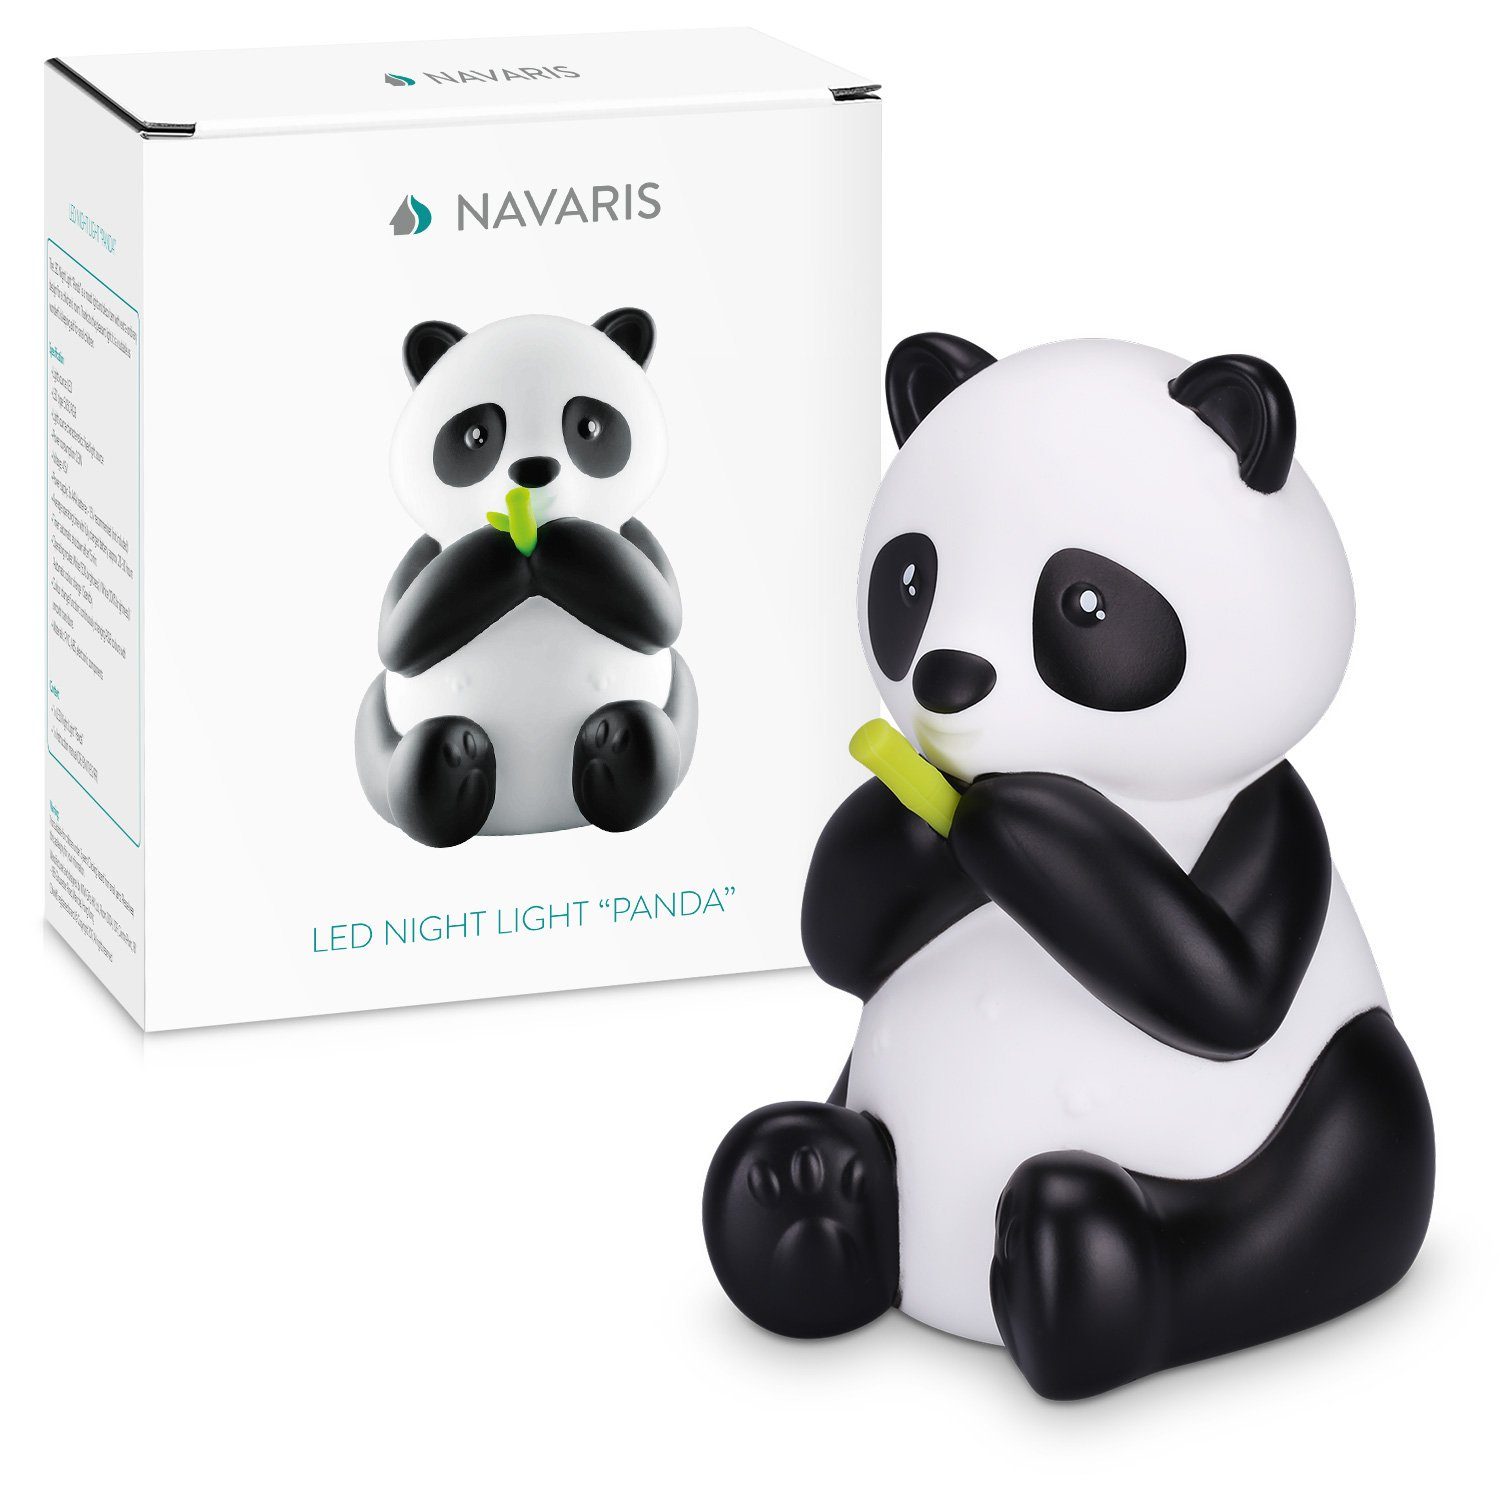 Navaris LED Panda Nachtlicht Süße Design - Farbwechsel Nachtleuchte Nachtlampe RGB